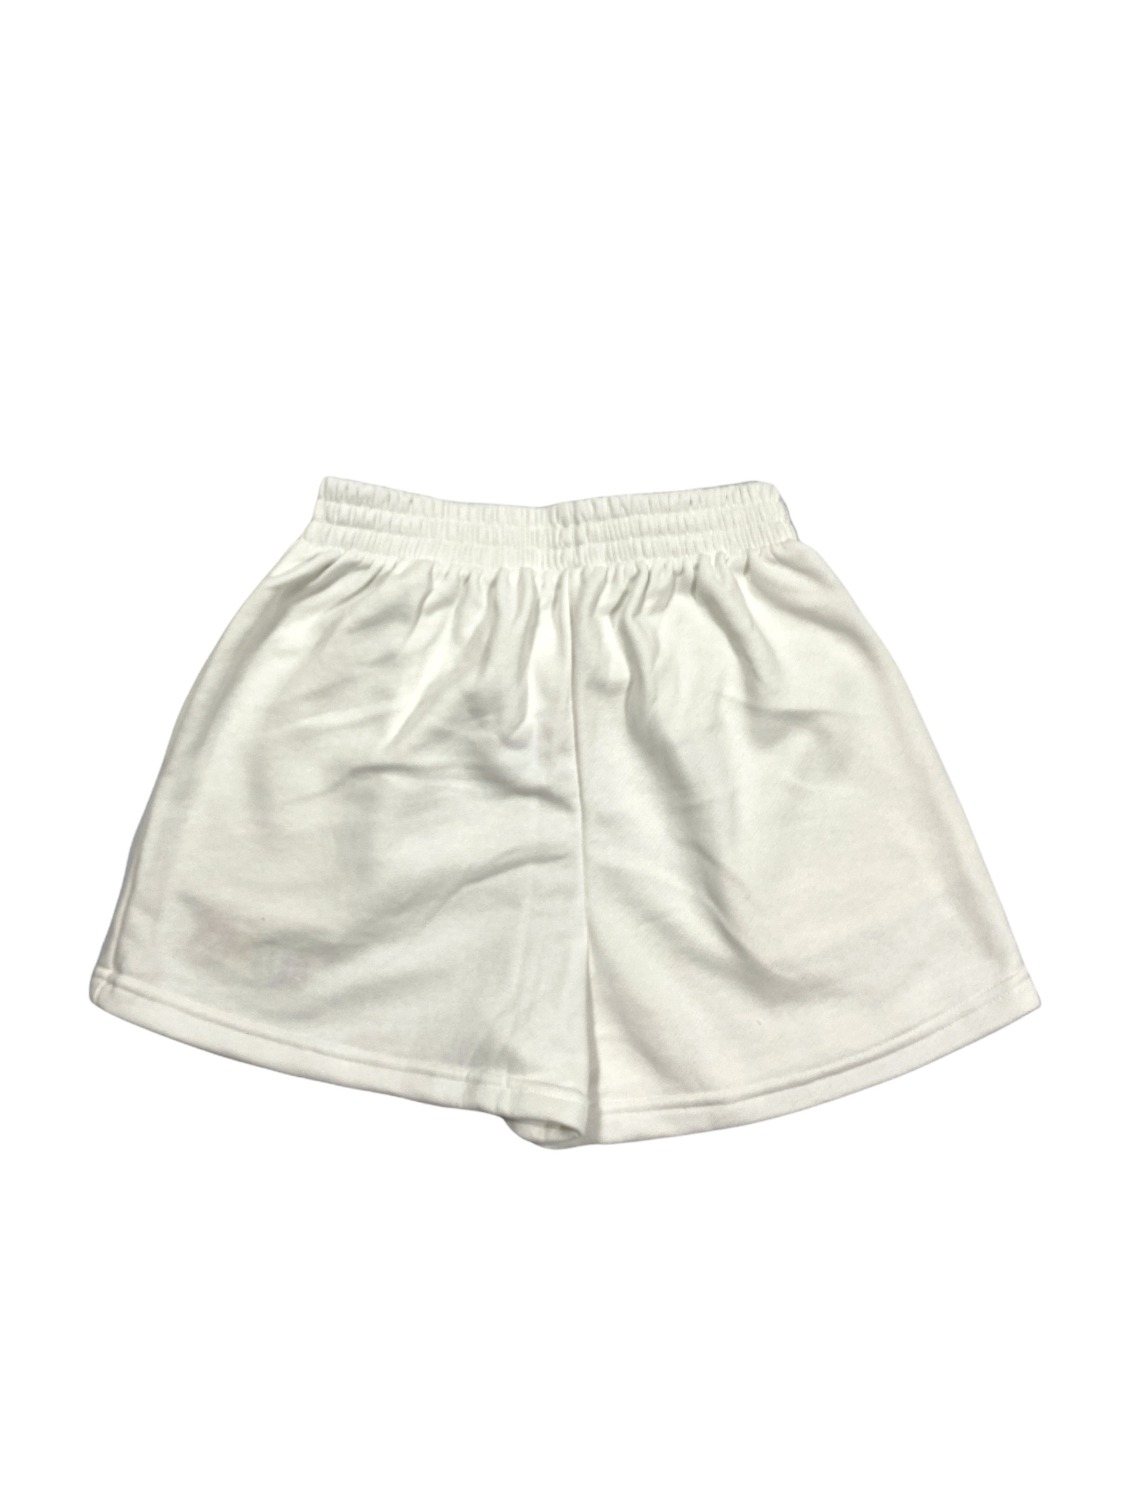 BLURRR Fluffy Shorts (White)